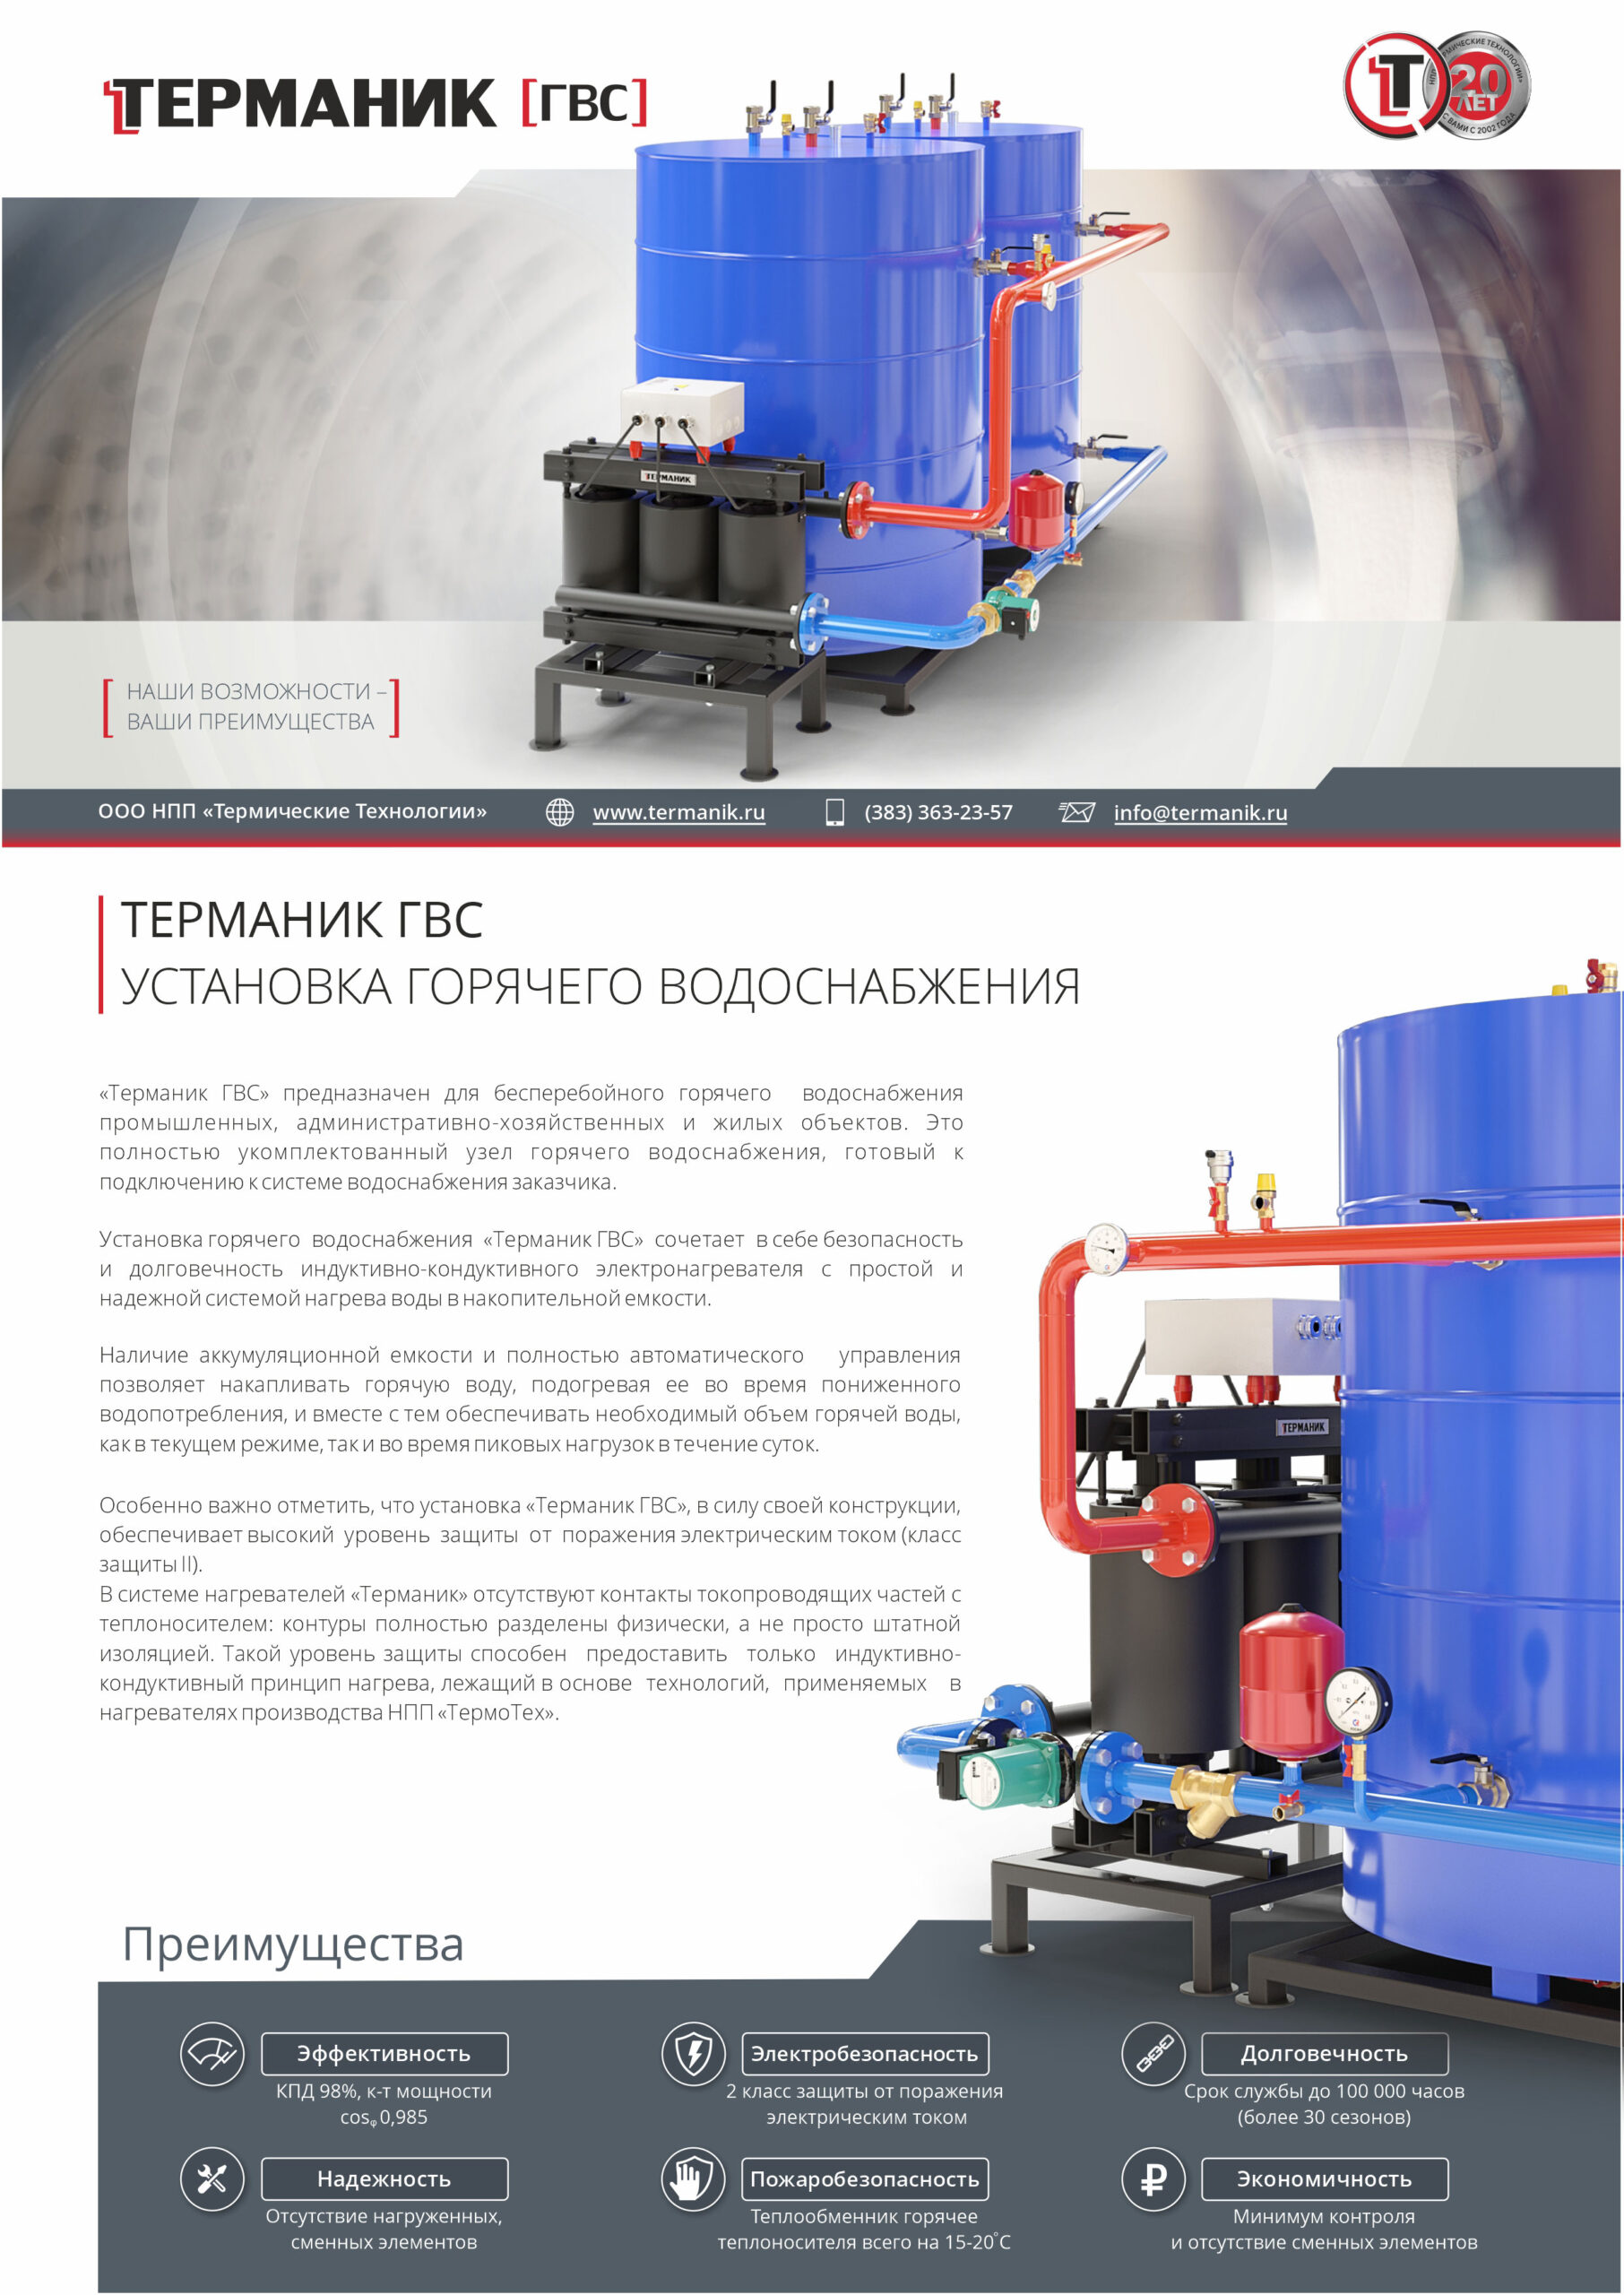 Терманик ГВС каталог оборудования для горячего водоснабжения в Казахстане